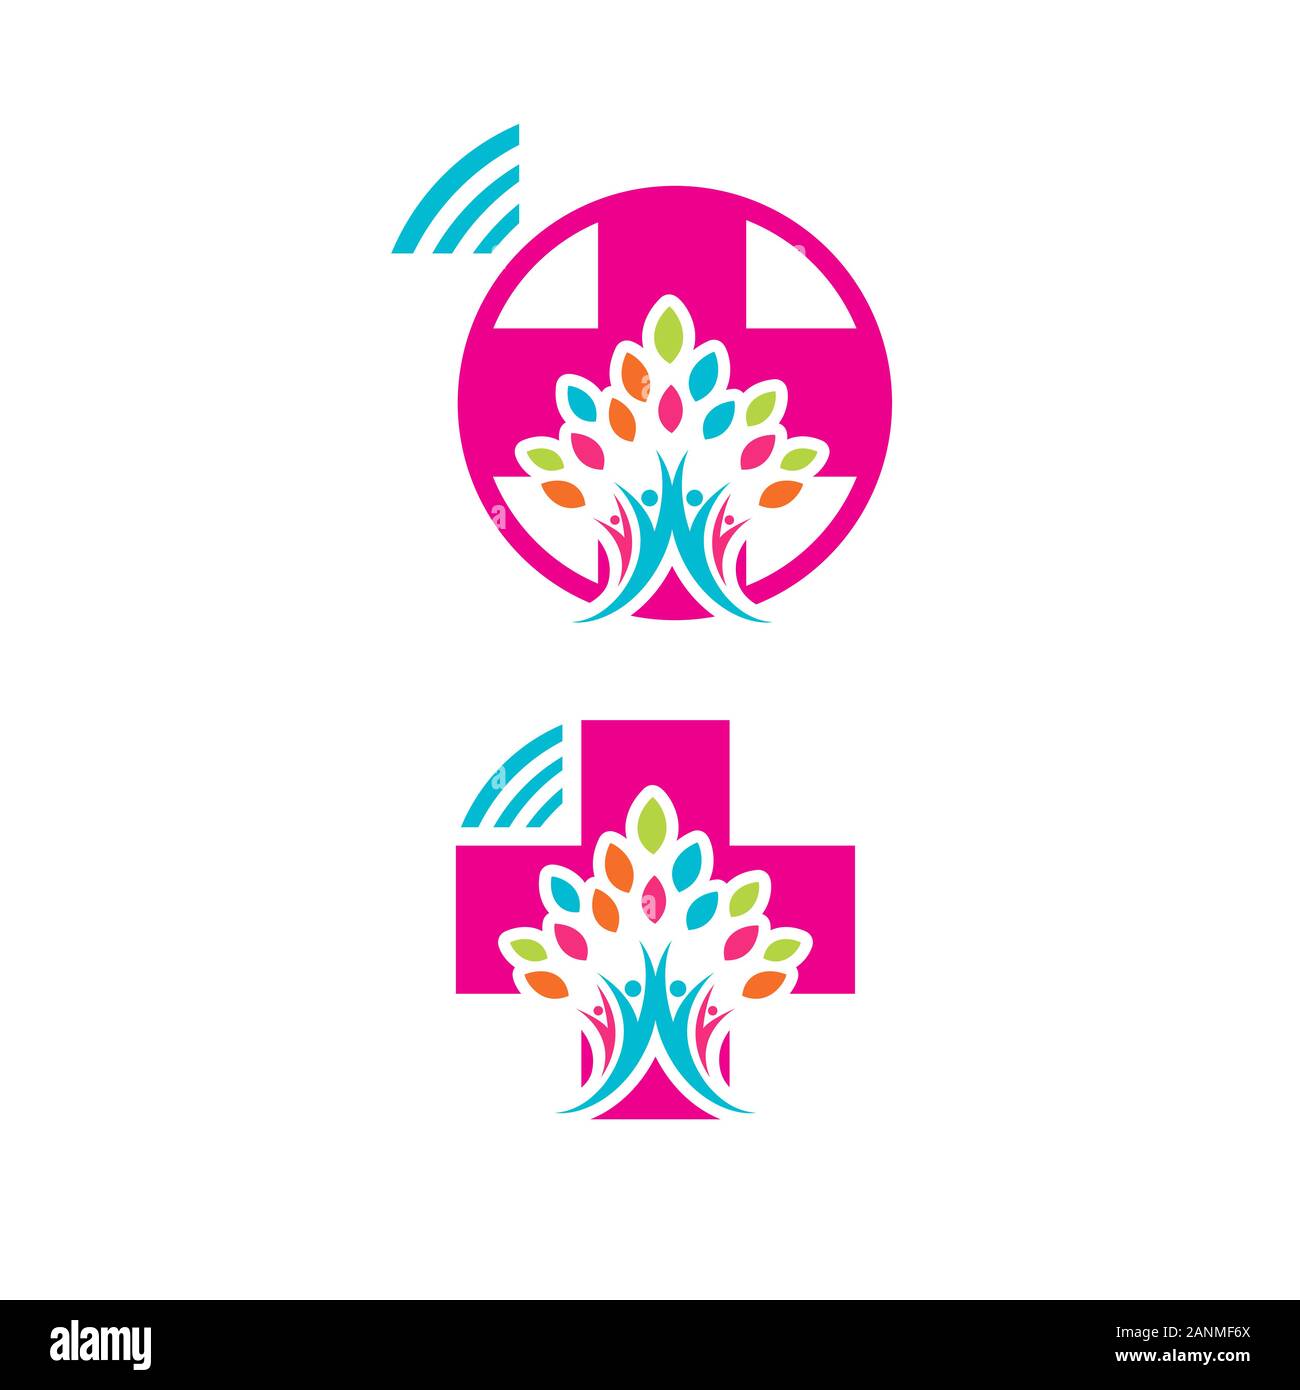 Sana simbolo della famiglia Medici on line logo healthcare vector graphic design Illustrazione Vettoriale